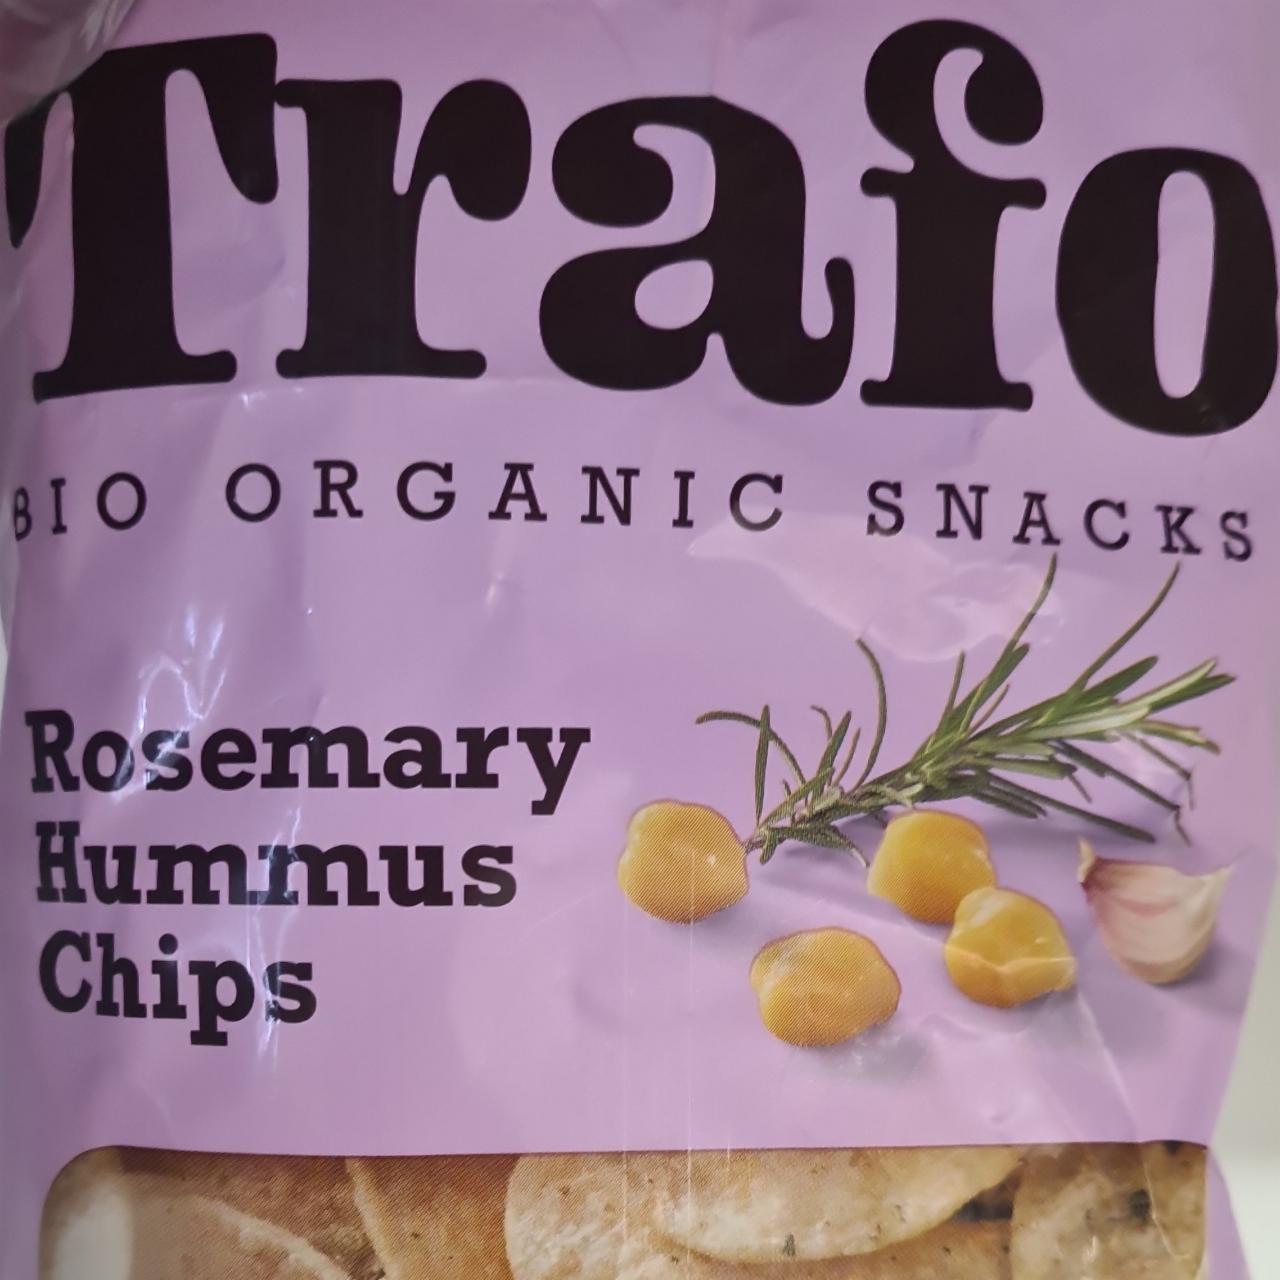 Fotografie - Bio Organic Snacks Rosemary Hummus Chips Trafo